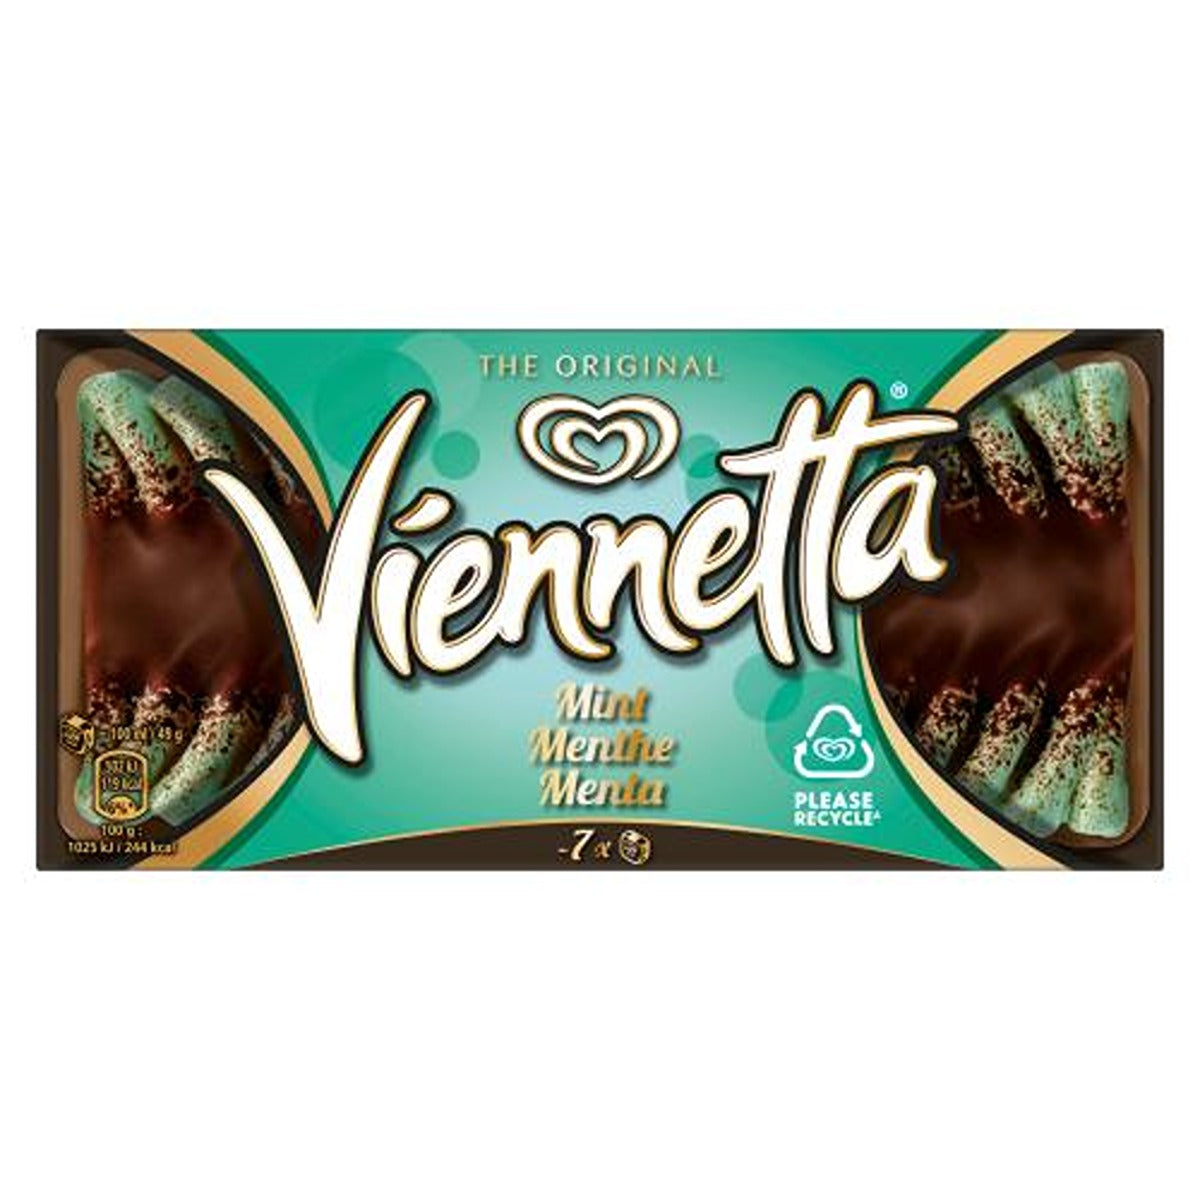 Viennetta - Mint Ice Cream Dessert - 650ml - Continental Food Store